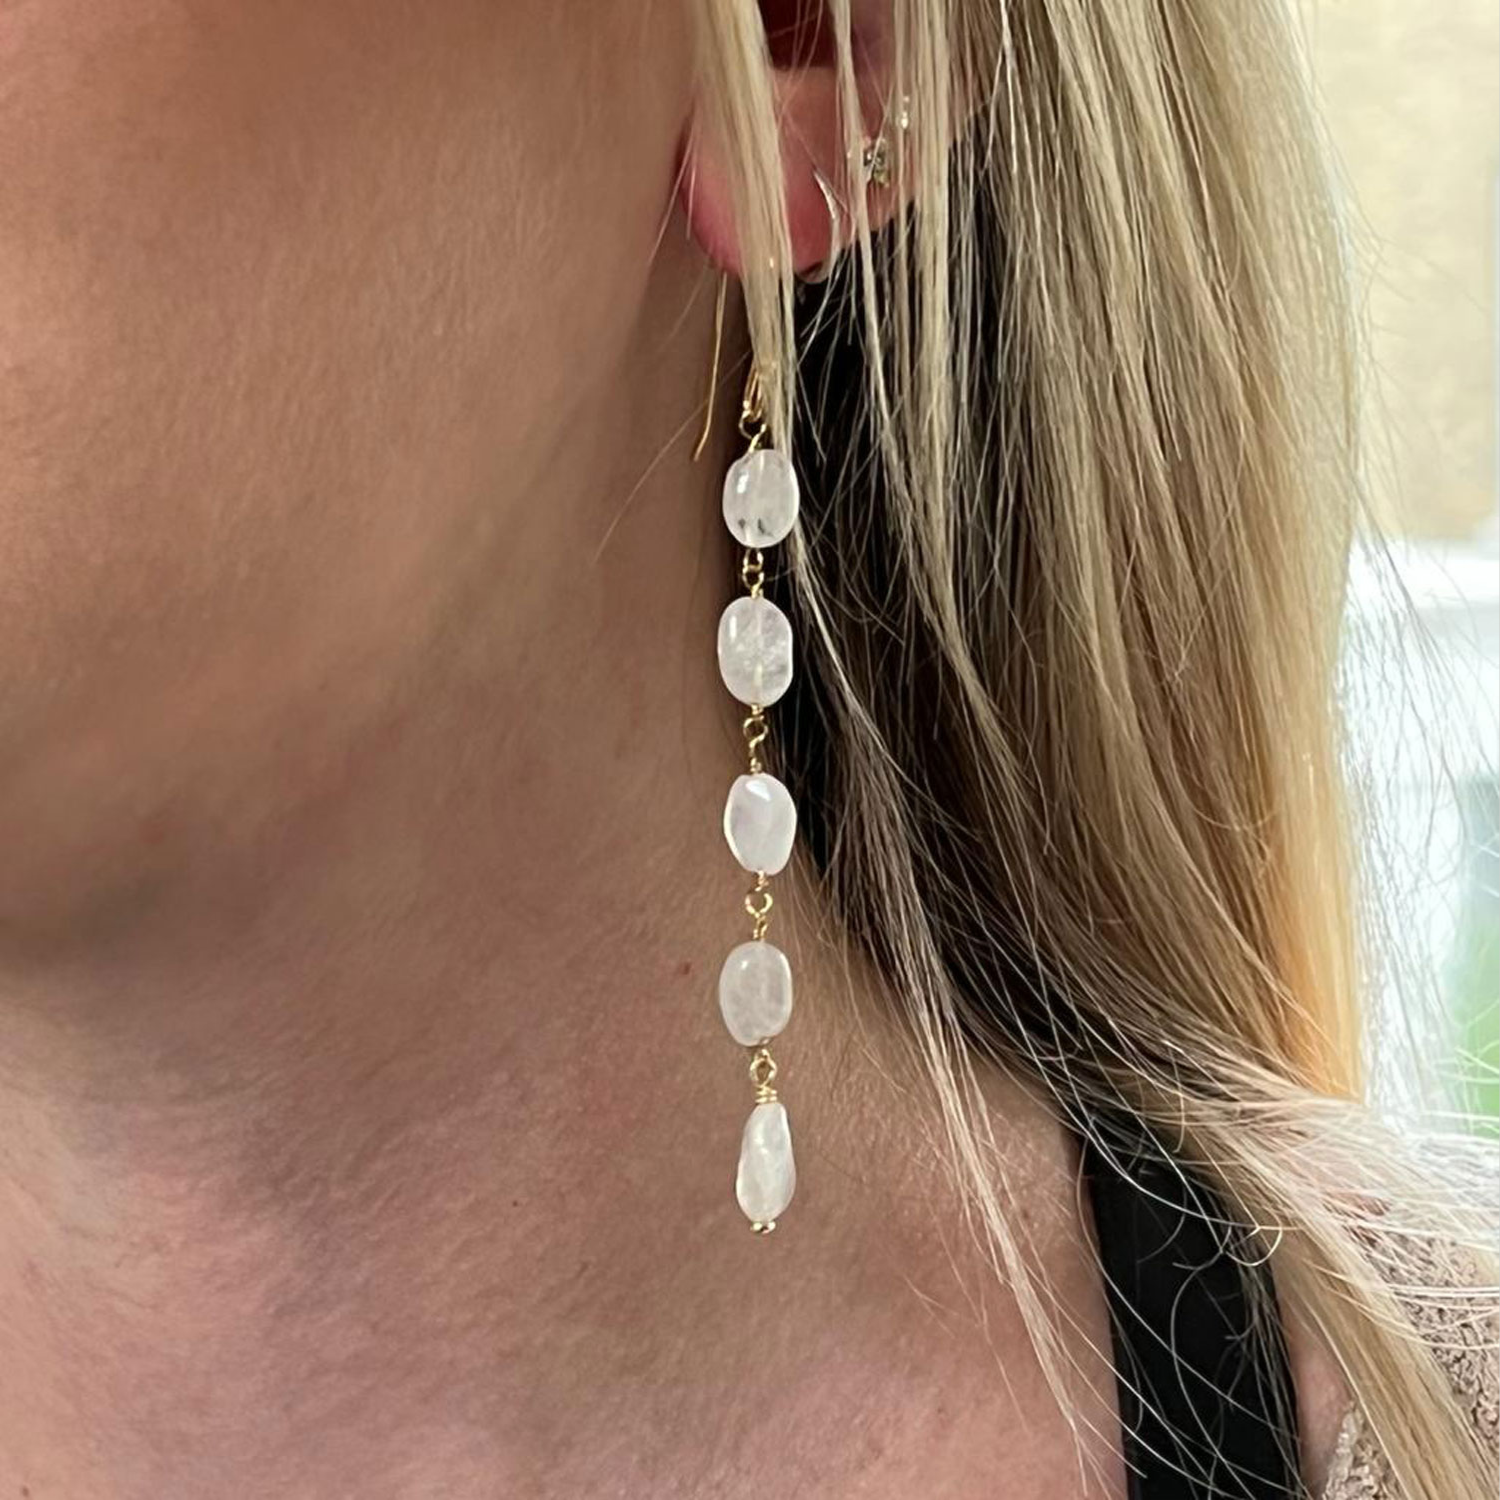 5 Stones white Moonstone earrings